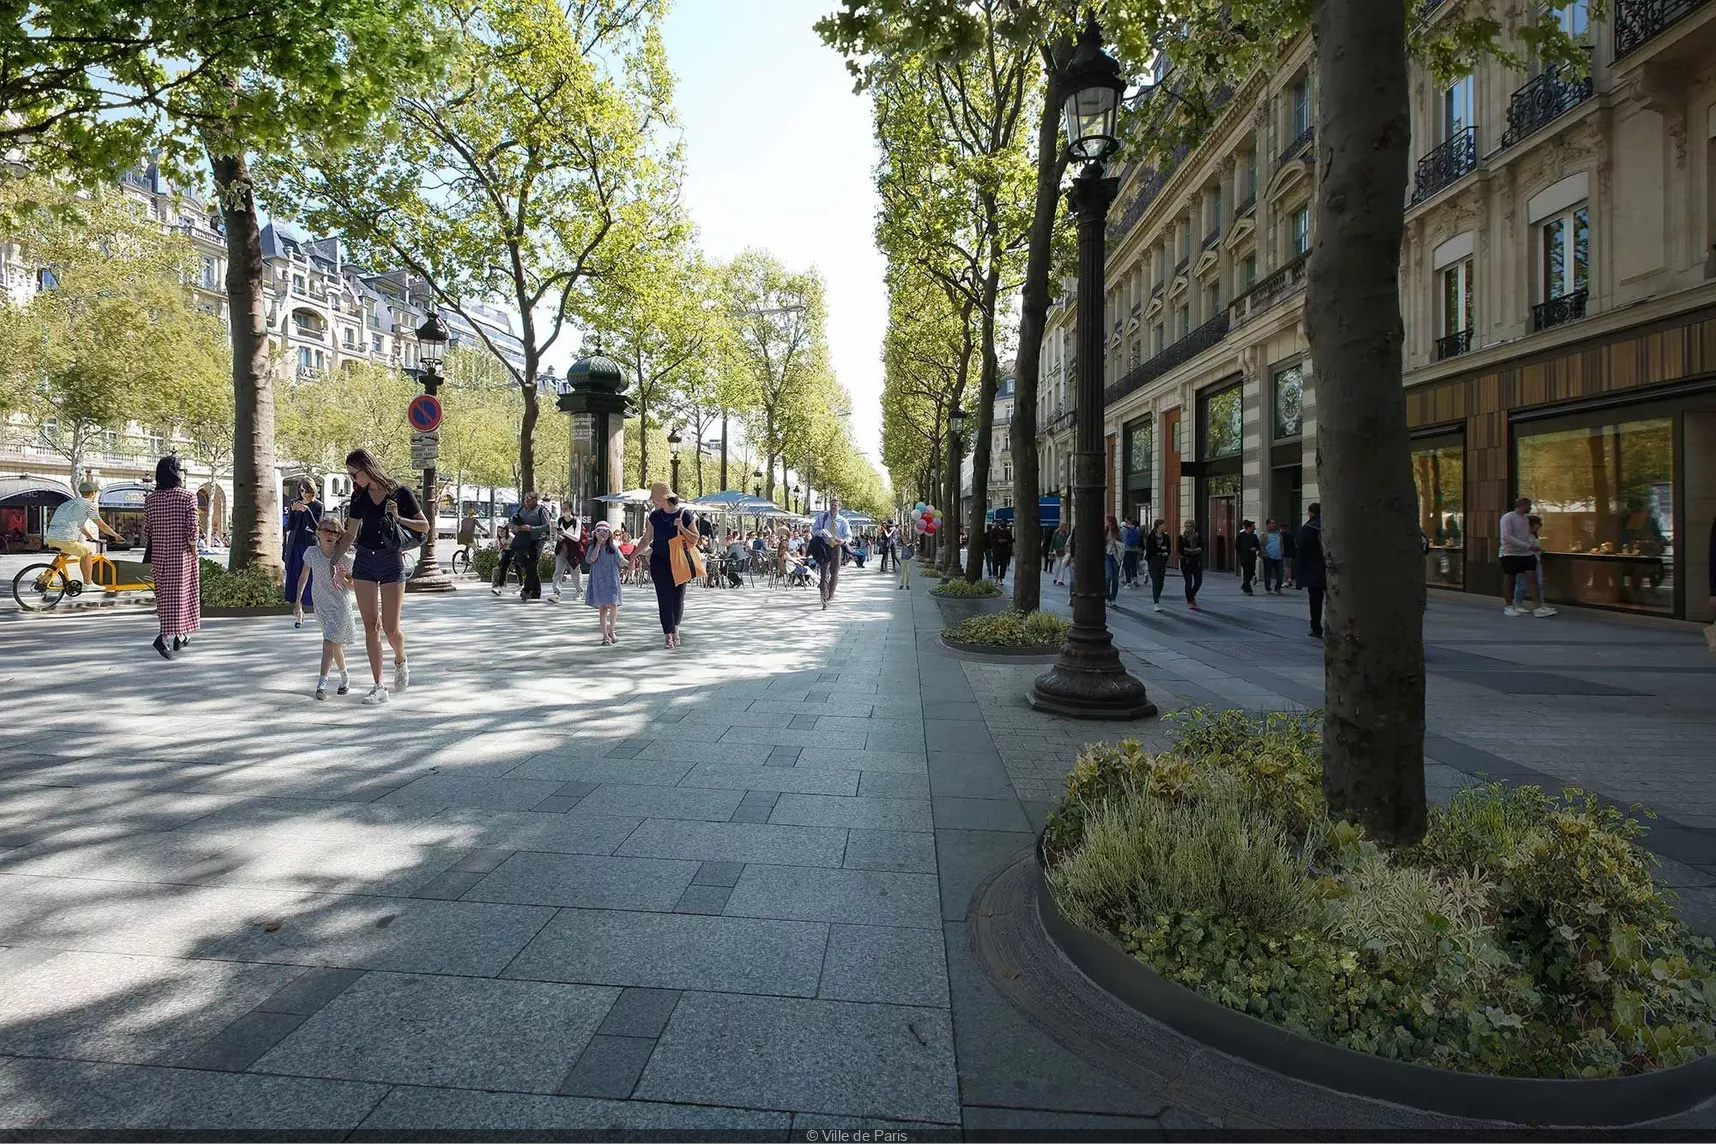 Paris' famous Champs-Élysées set for green transformation